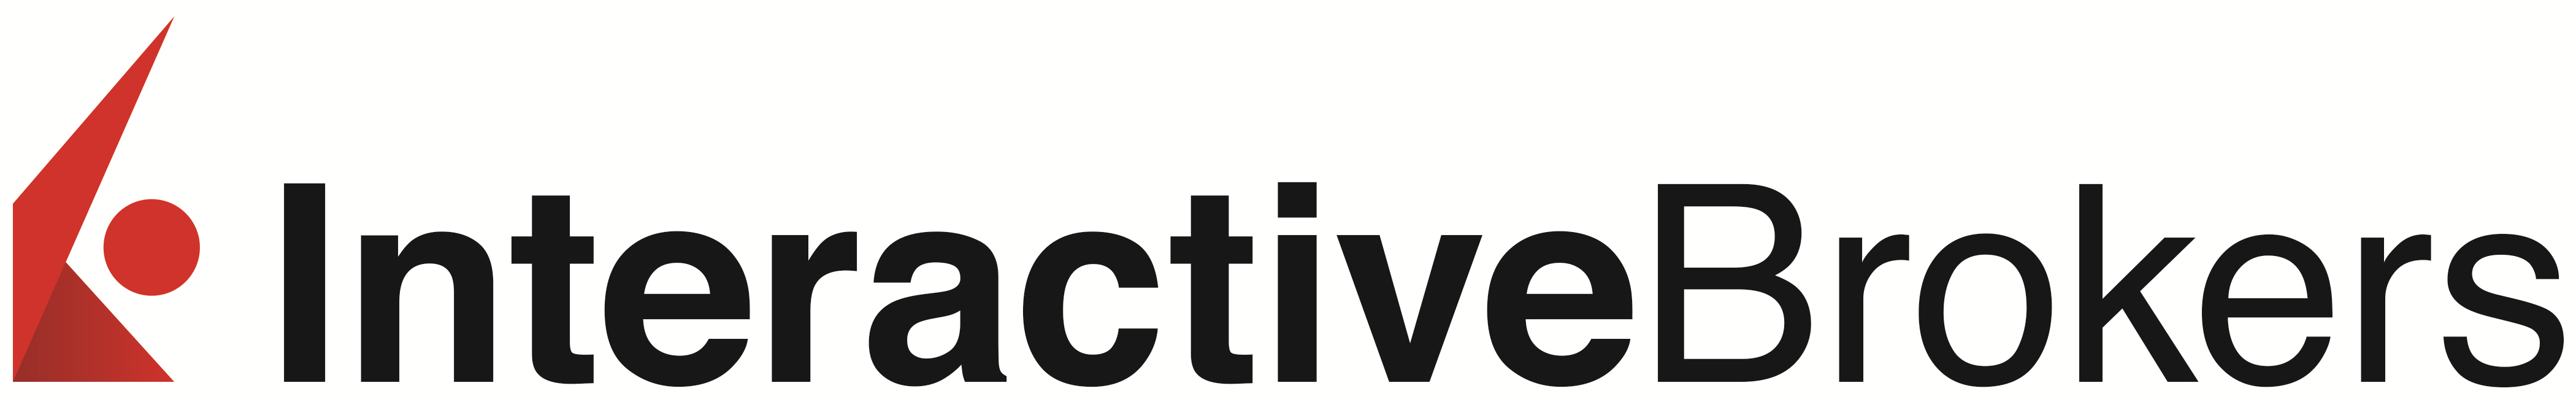 Interactive Brokers Brand Logo